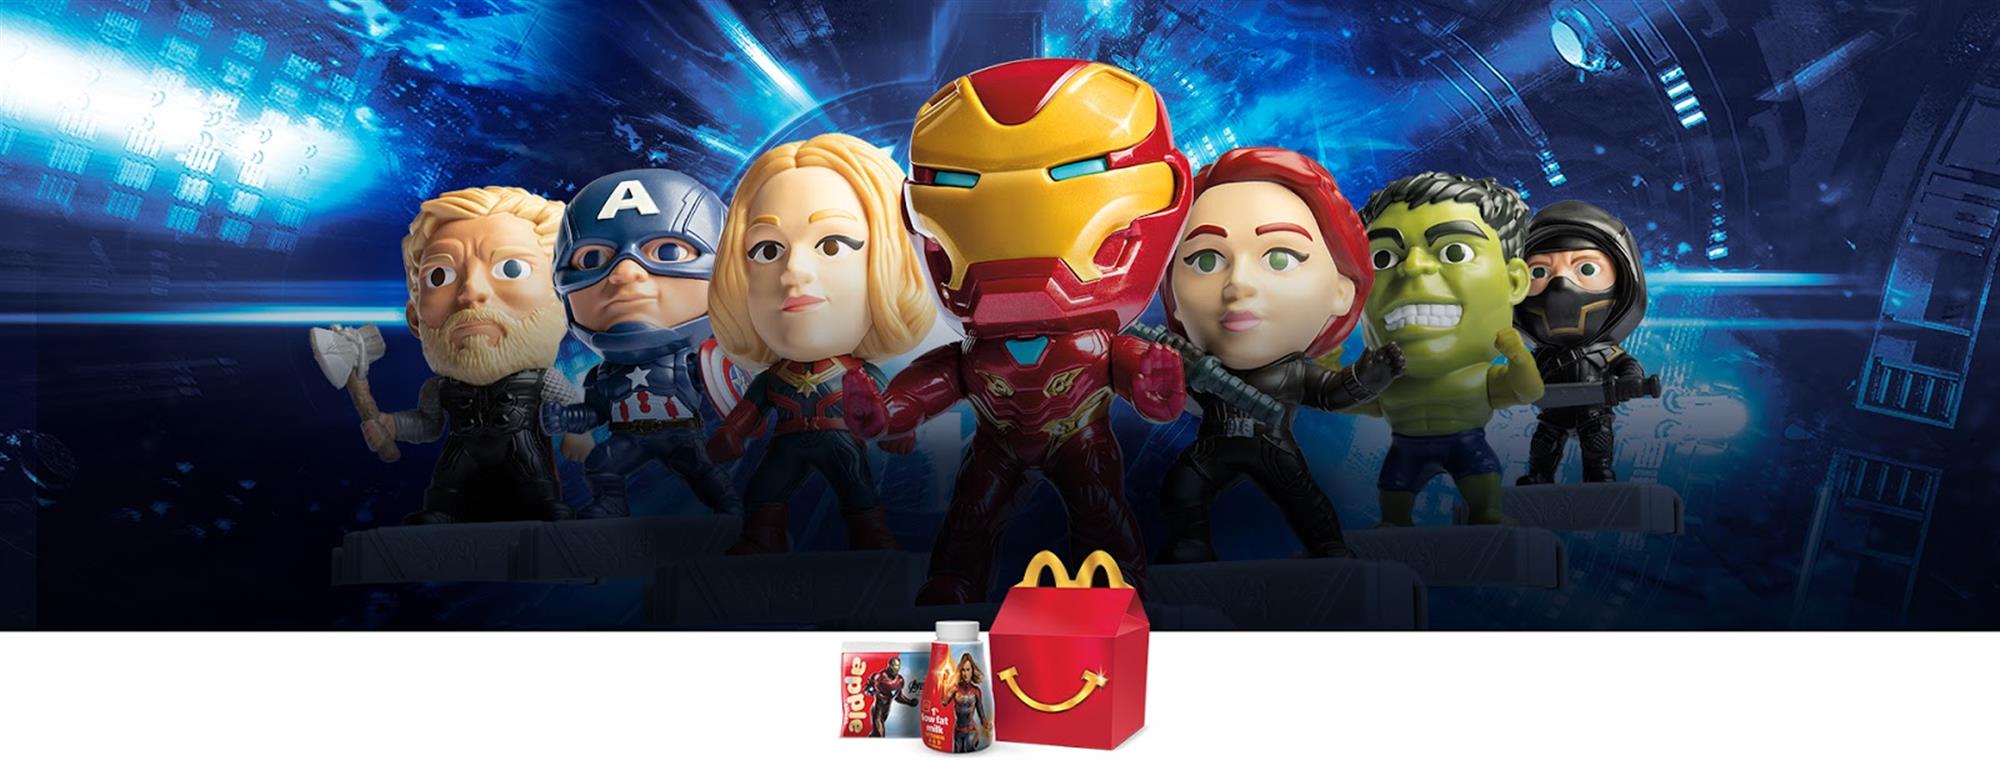 Avengers Endgame THOR #22 IN HAND 2019 McDonalds toys 